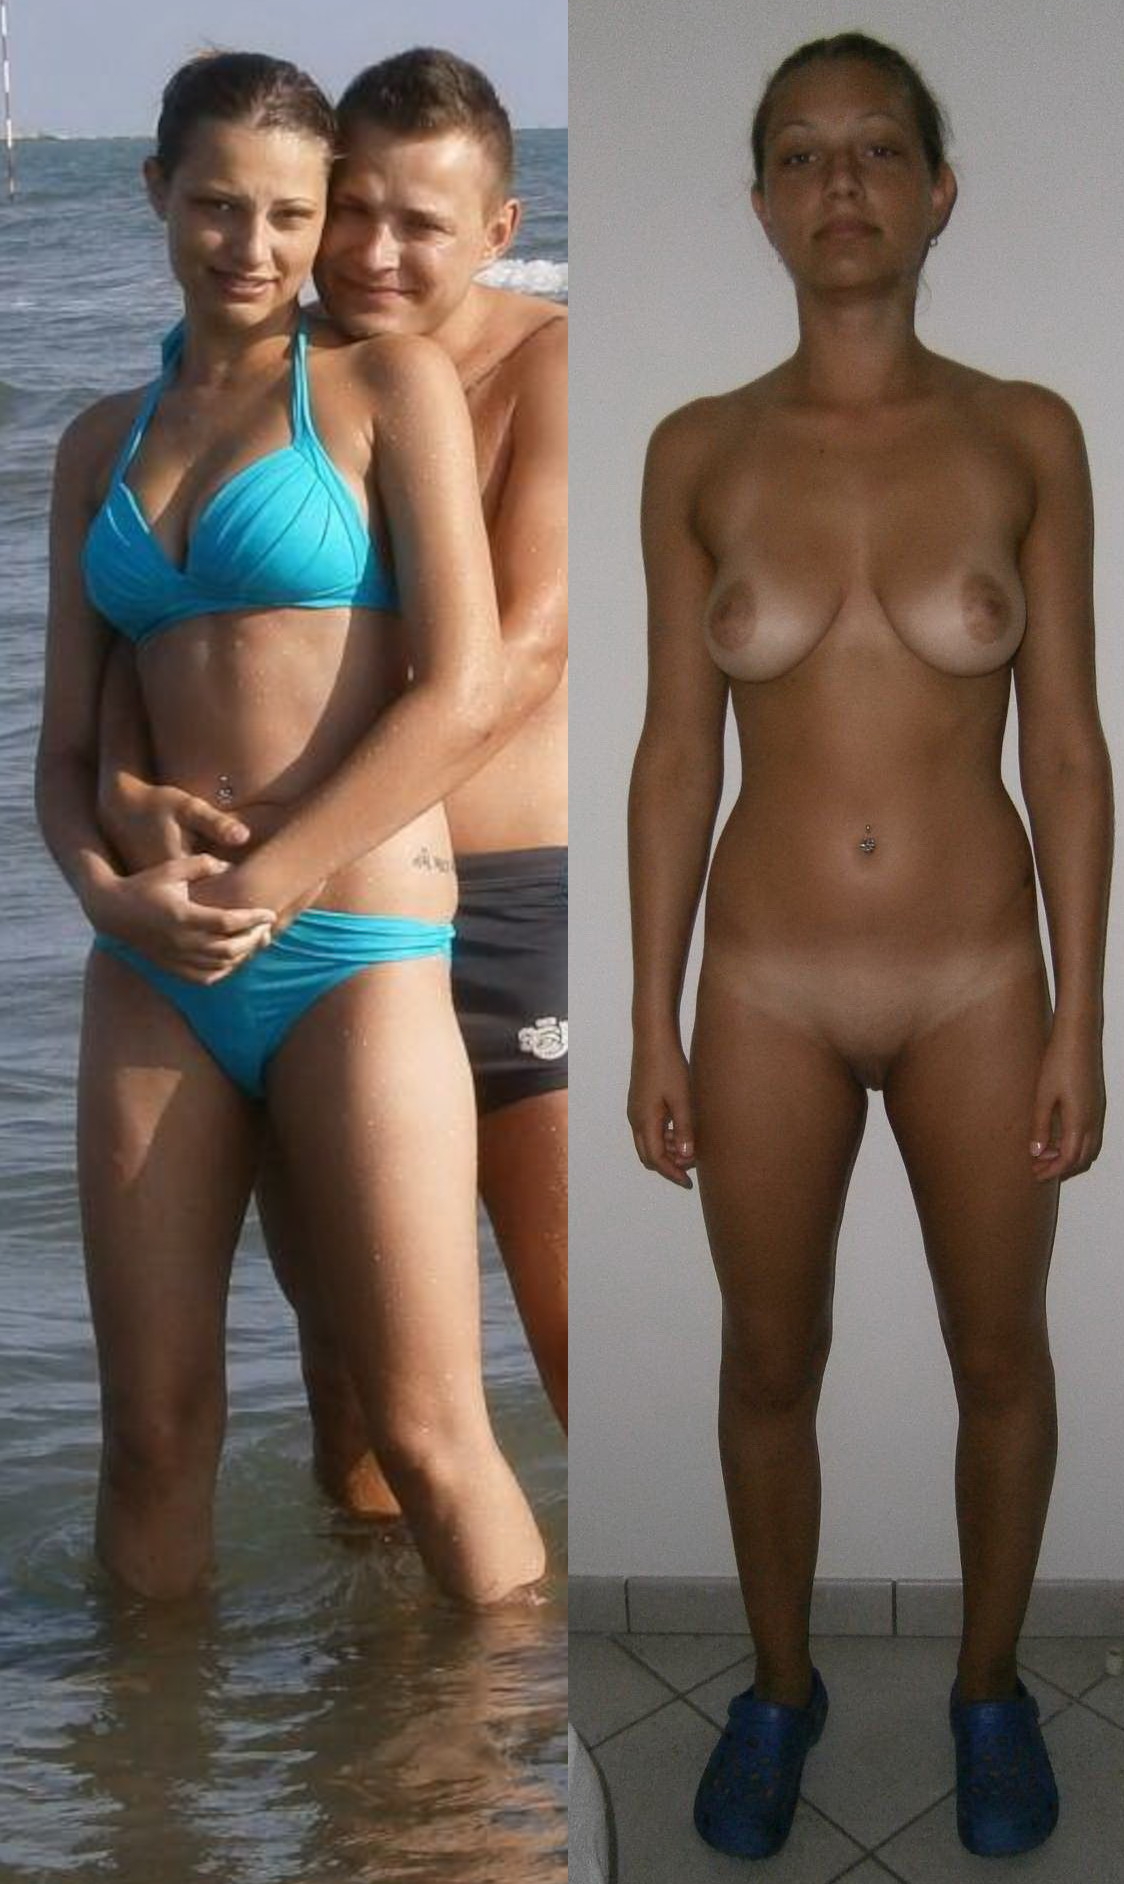 Bikini or Nude